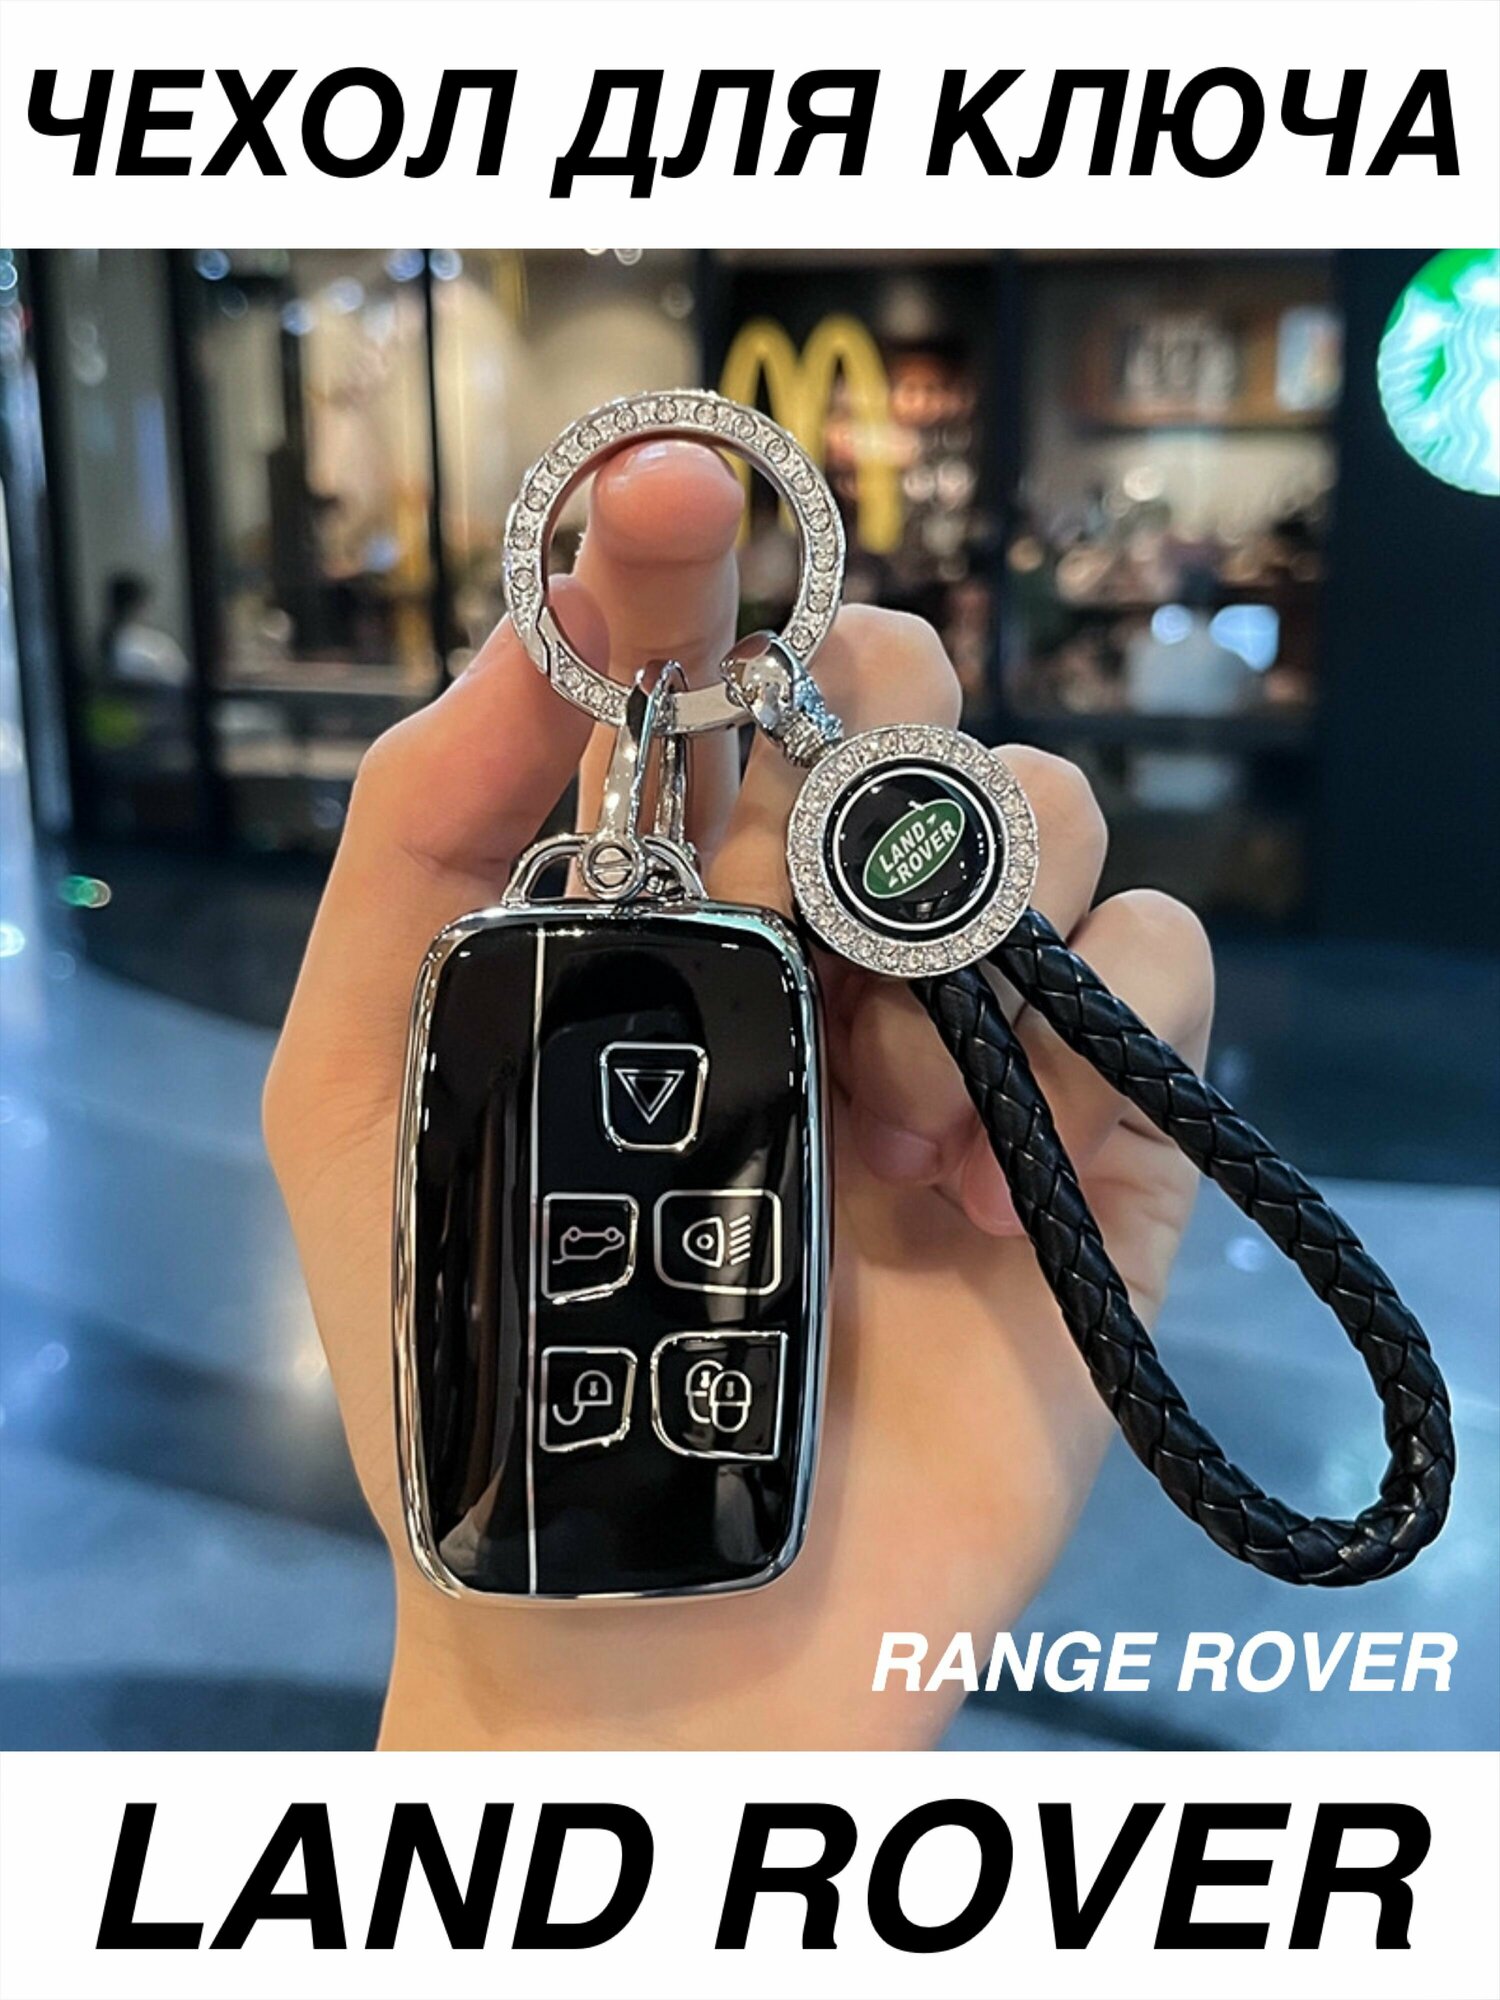 Чехол для ключа Land Rover силиконовый с брелком ремешком / Чехол для ключа Range Rover брелок Рендж Ровер Ланд Ровер